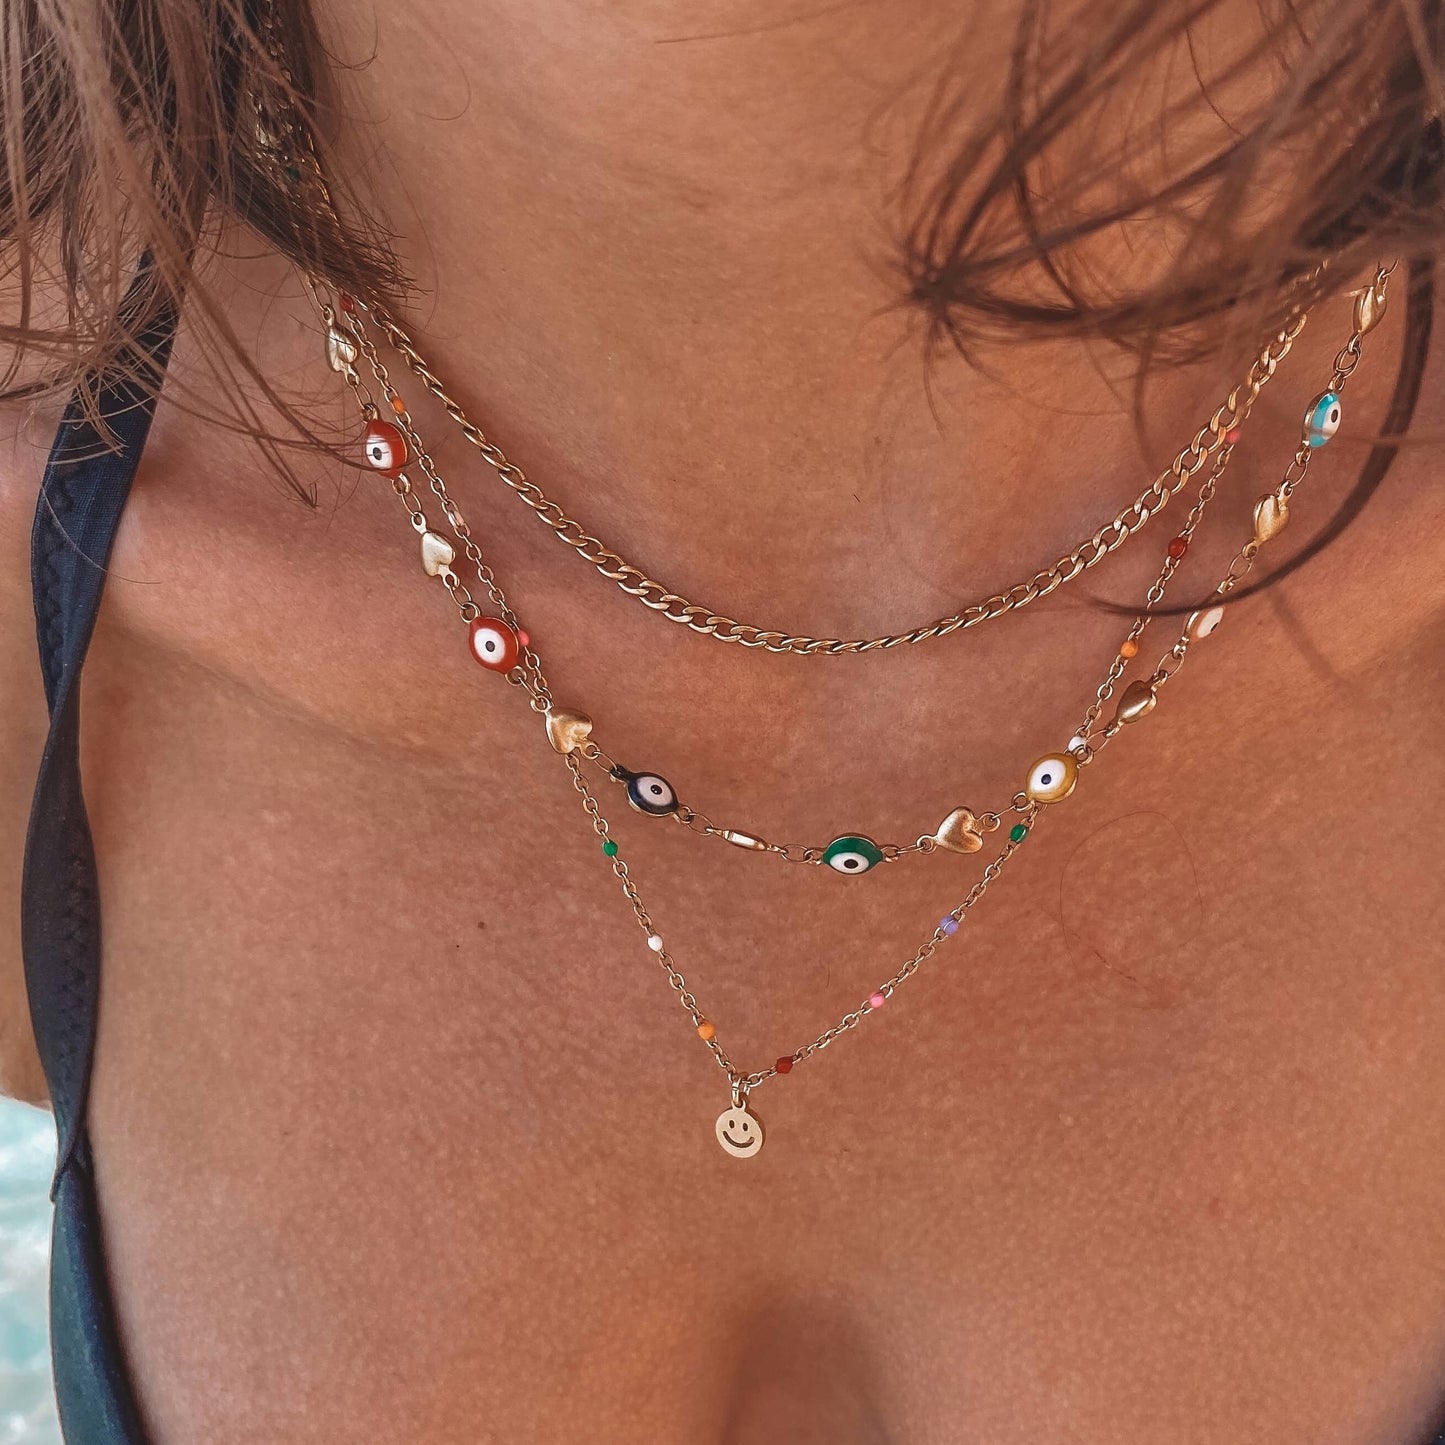 Sivas necklace